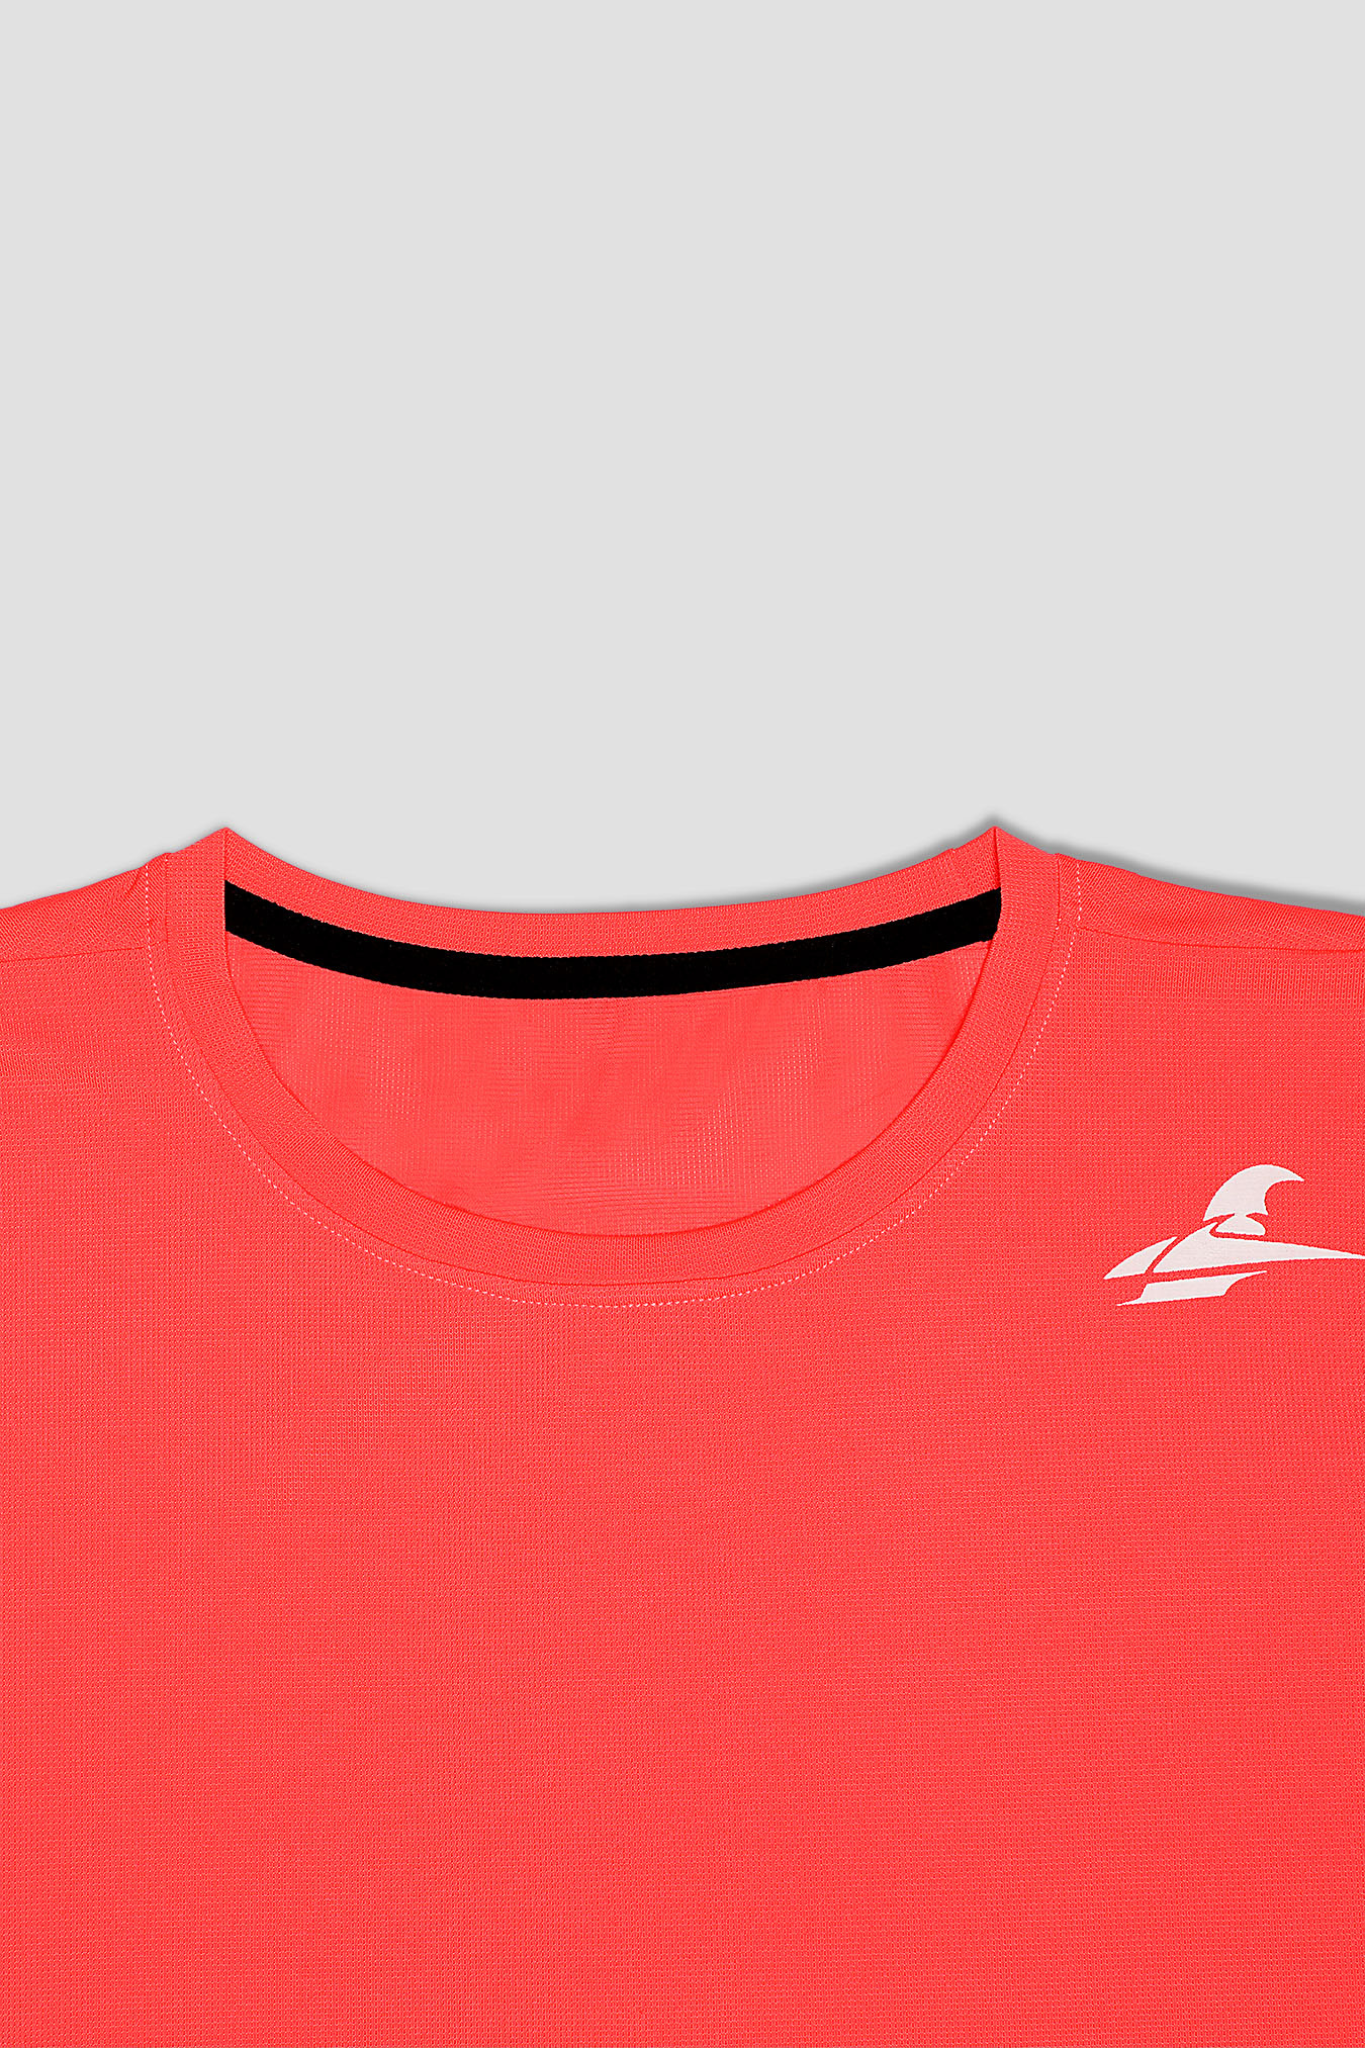 Arachion Triumph T-shirt | Coral Red